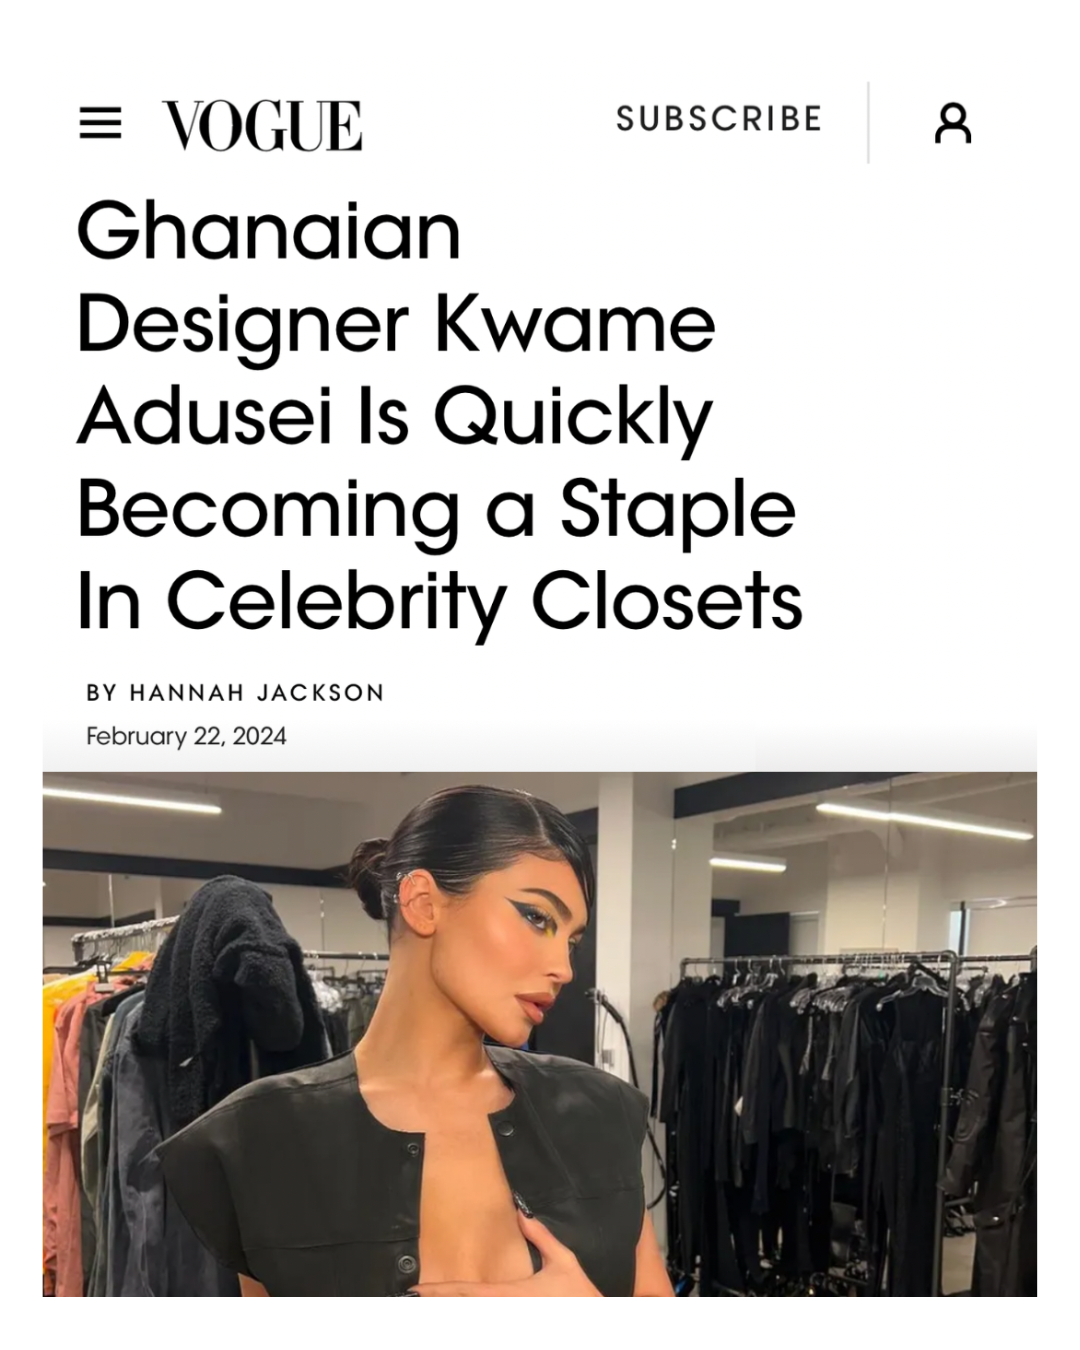 Designer Kwame Adusei in Conversation with Vogue Magazine